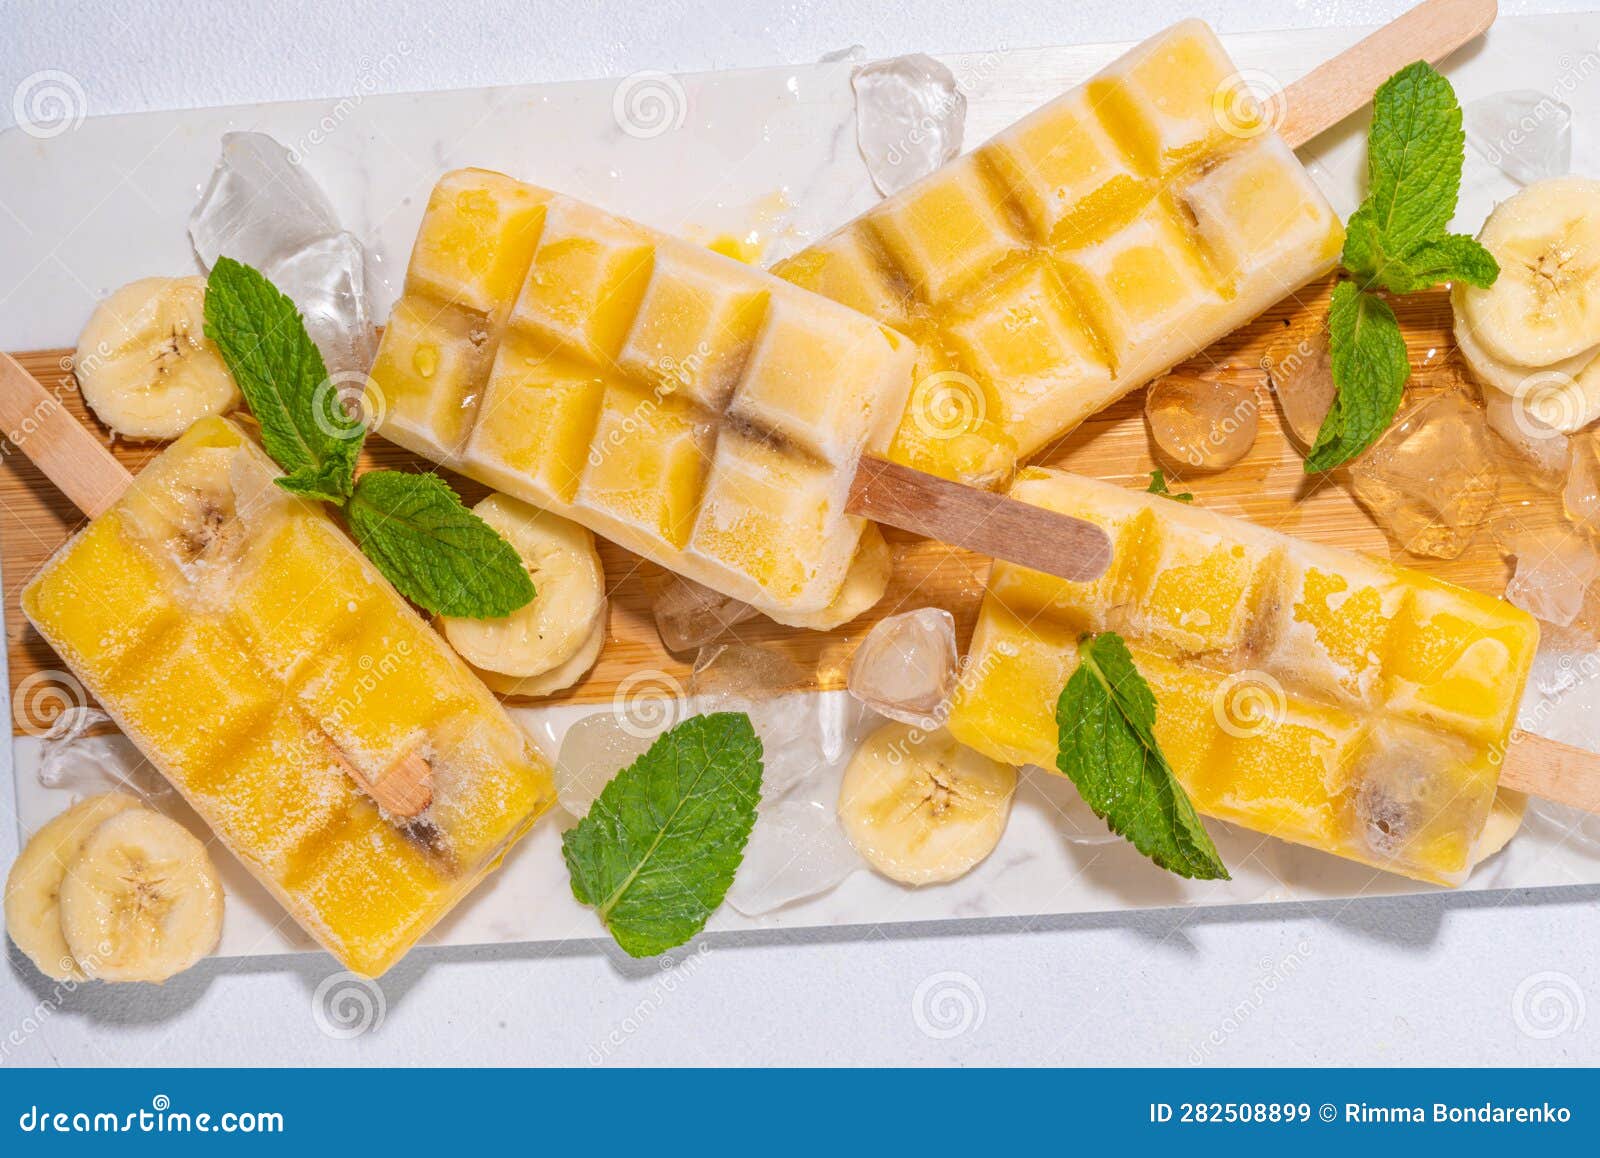 香蕉冰棍怎么做_香蕉冰棍的做法_纳木措畔的曼陀罗_豆果美食